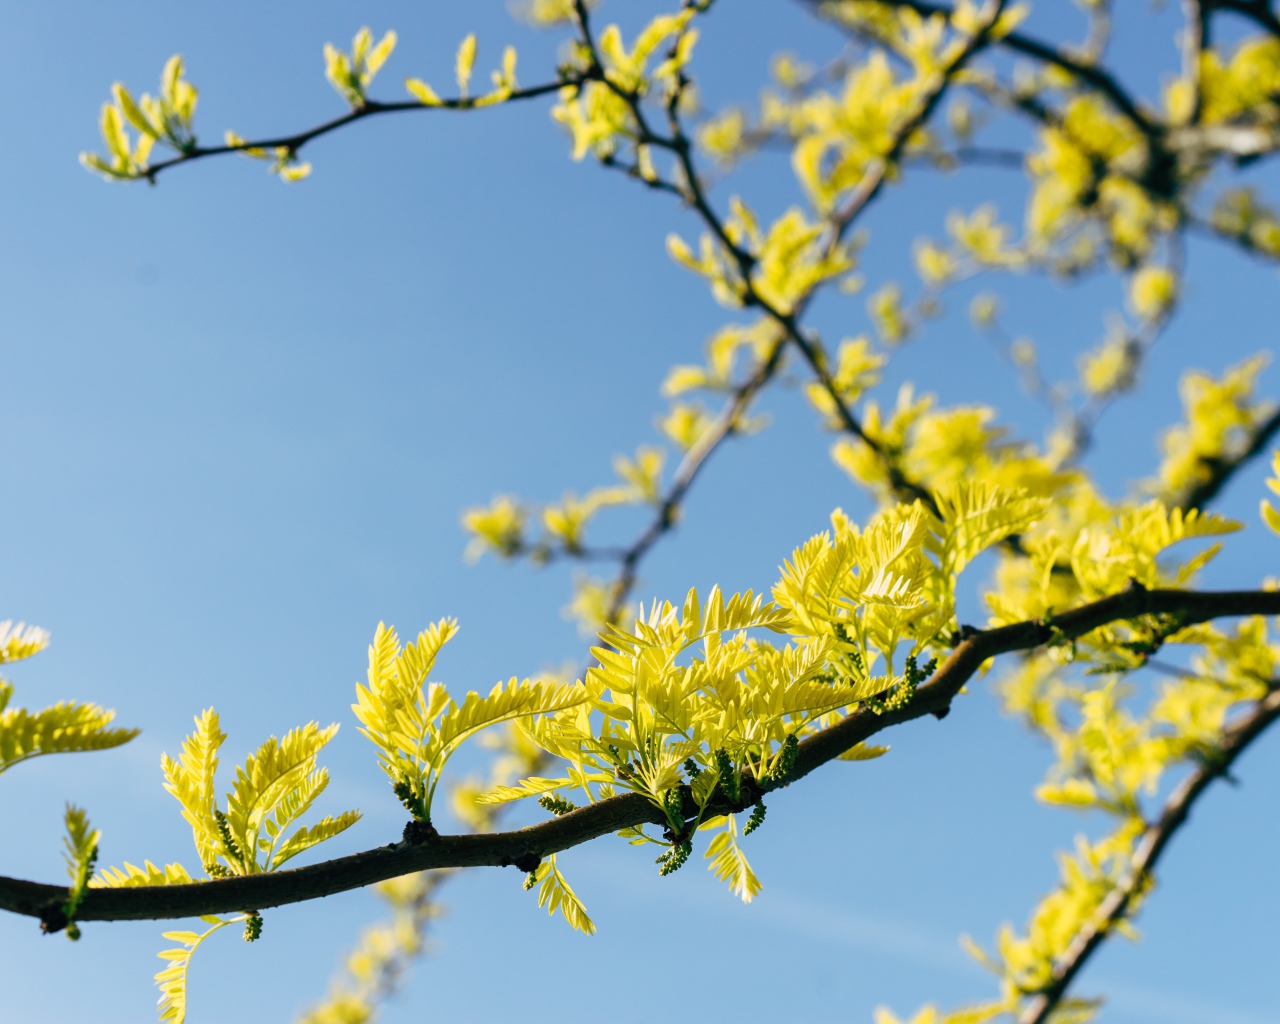 Желтые листья акации на дереве весной 